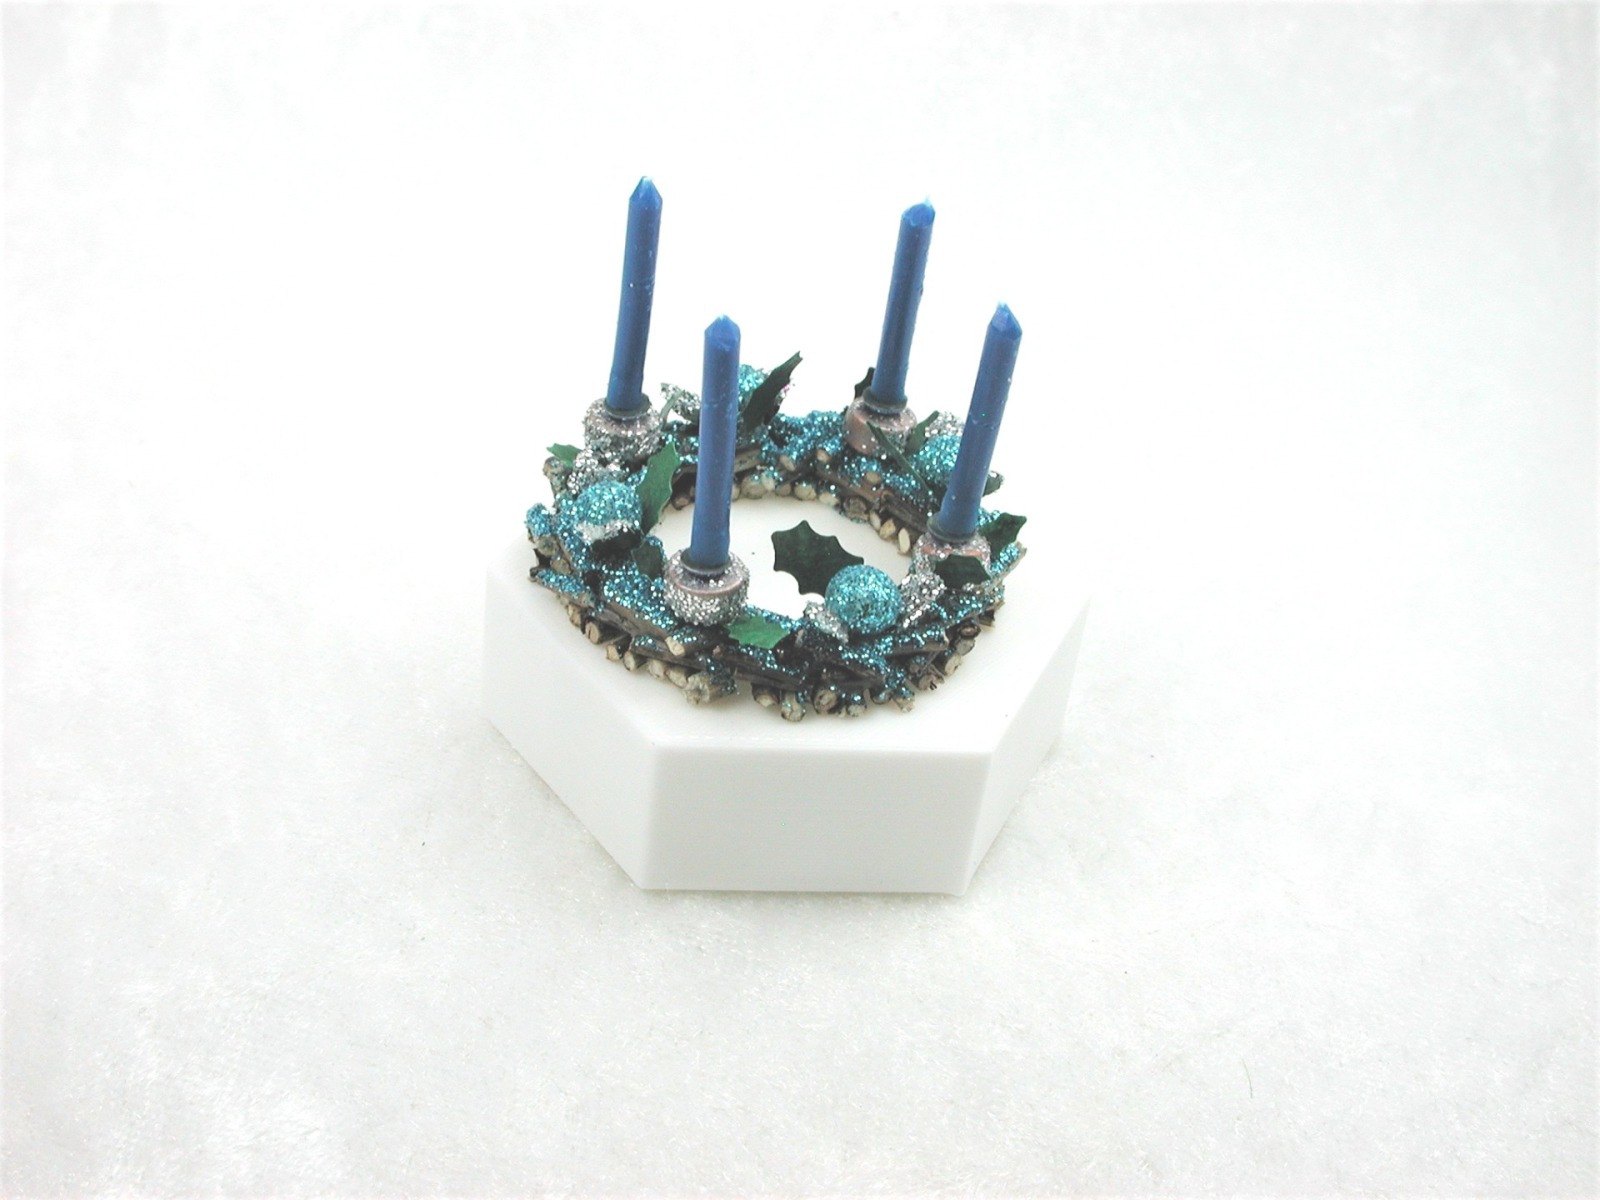 Adventskranz aus Holz mit echten blauen Kerzen im Kerzenhalter und in blau gehaltene Dekoration 7